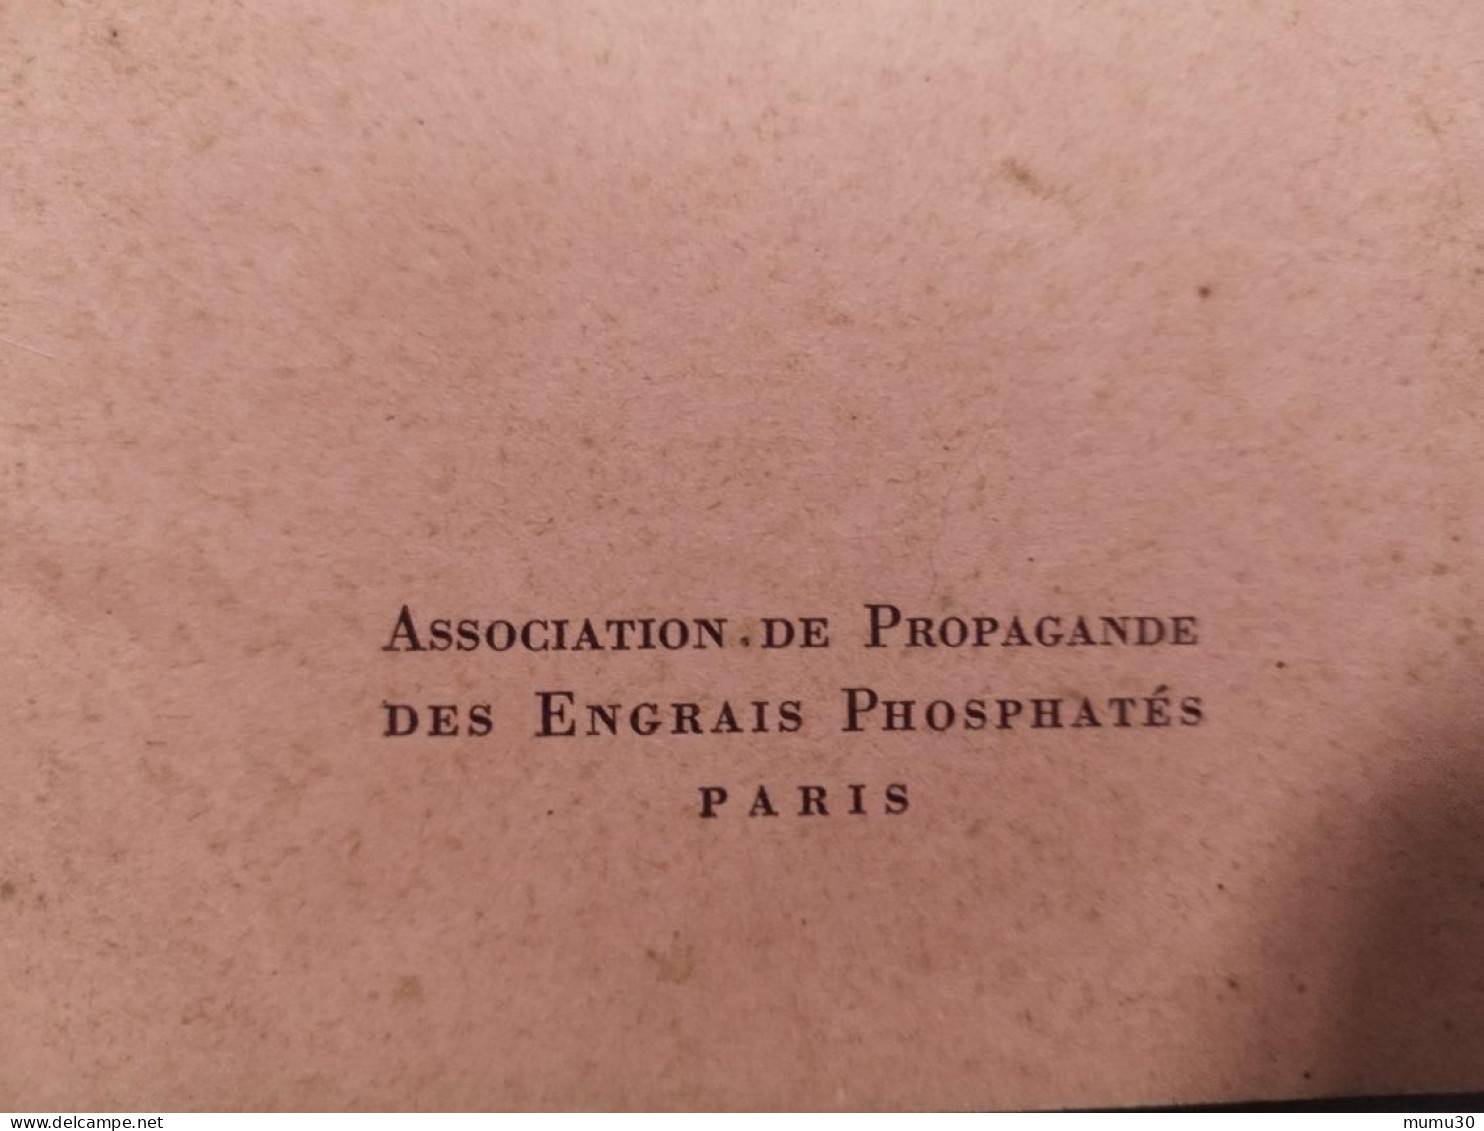 Rare Livret La Vigne Sa Fumure Propagande Des Engrais Phosphates 1950 Viticulture Agriculture France - Other & Unclassified